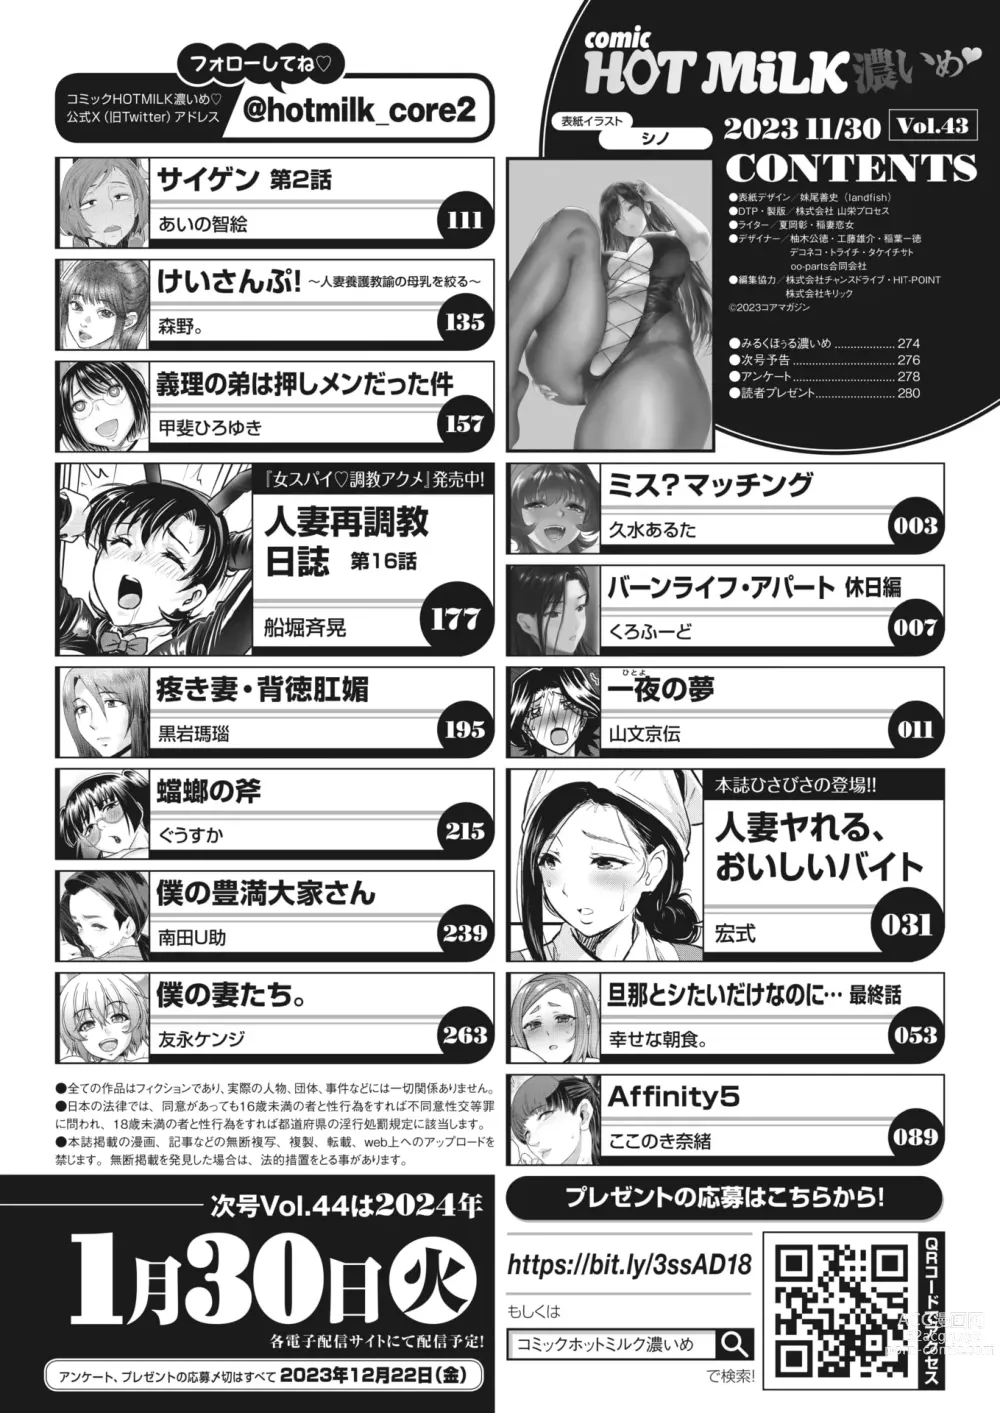 Page 3 of manga COMIC HOTMiLK Koime Vol. 43